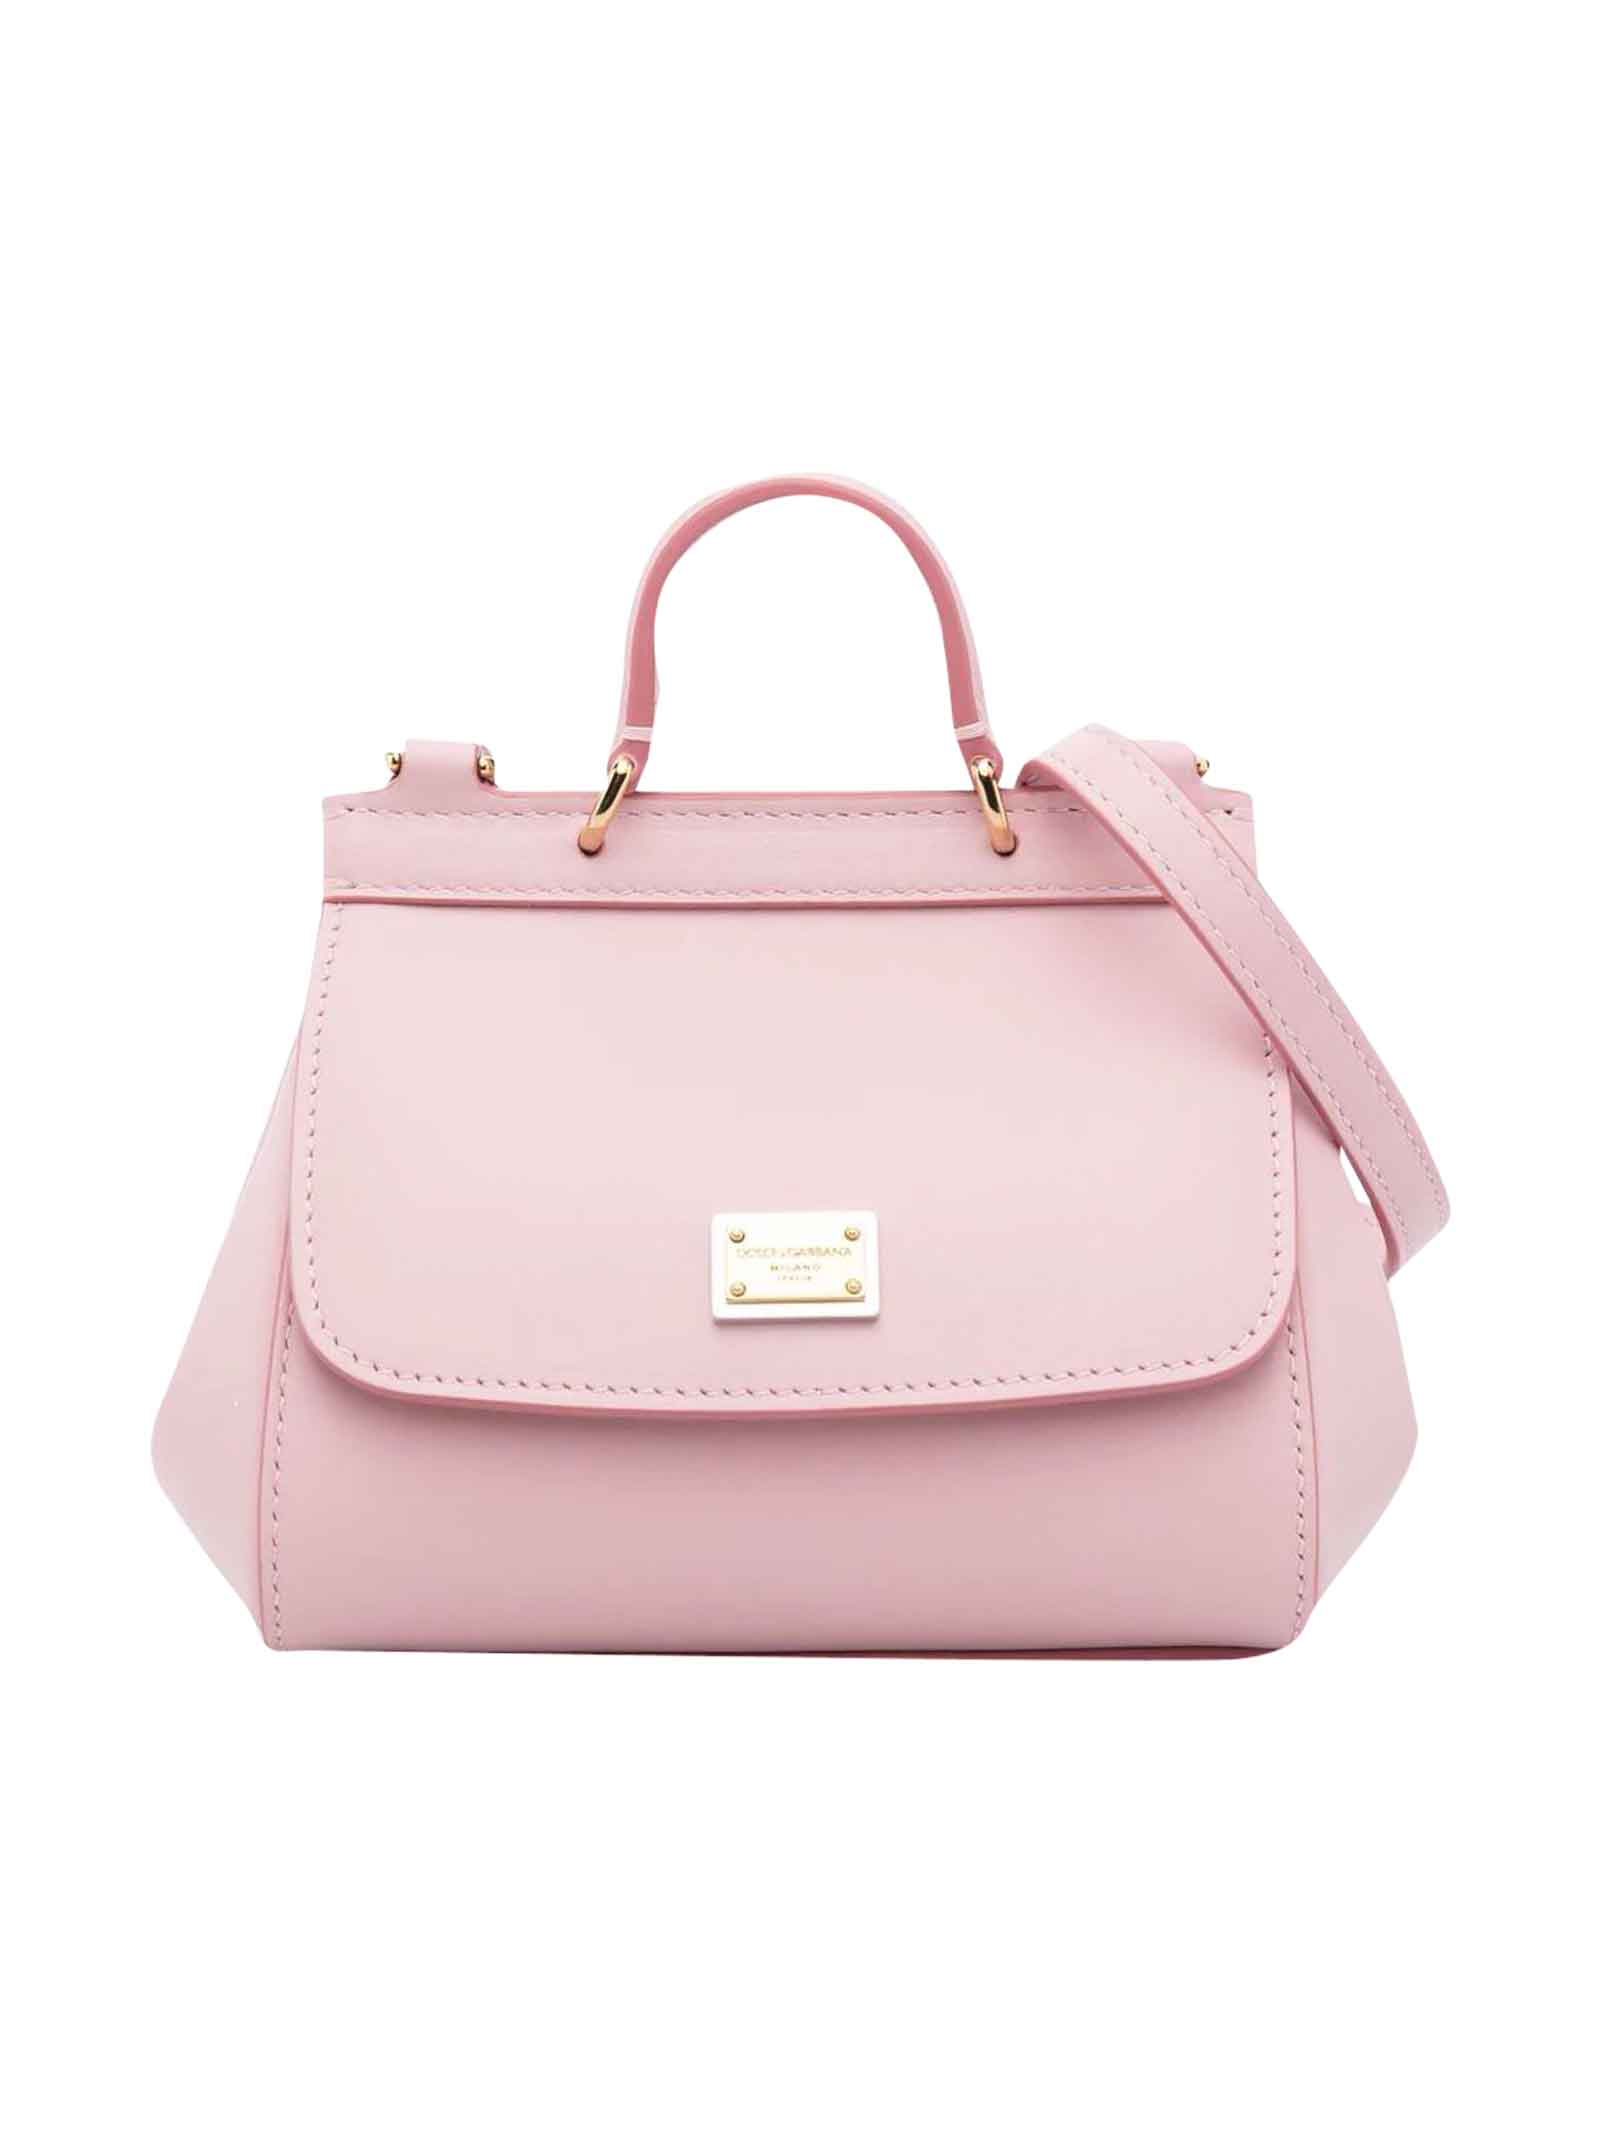 Dolce & Gabbana Pink Bag Girl